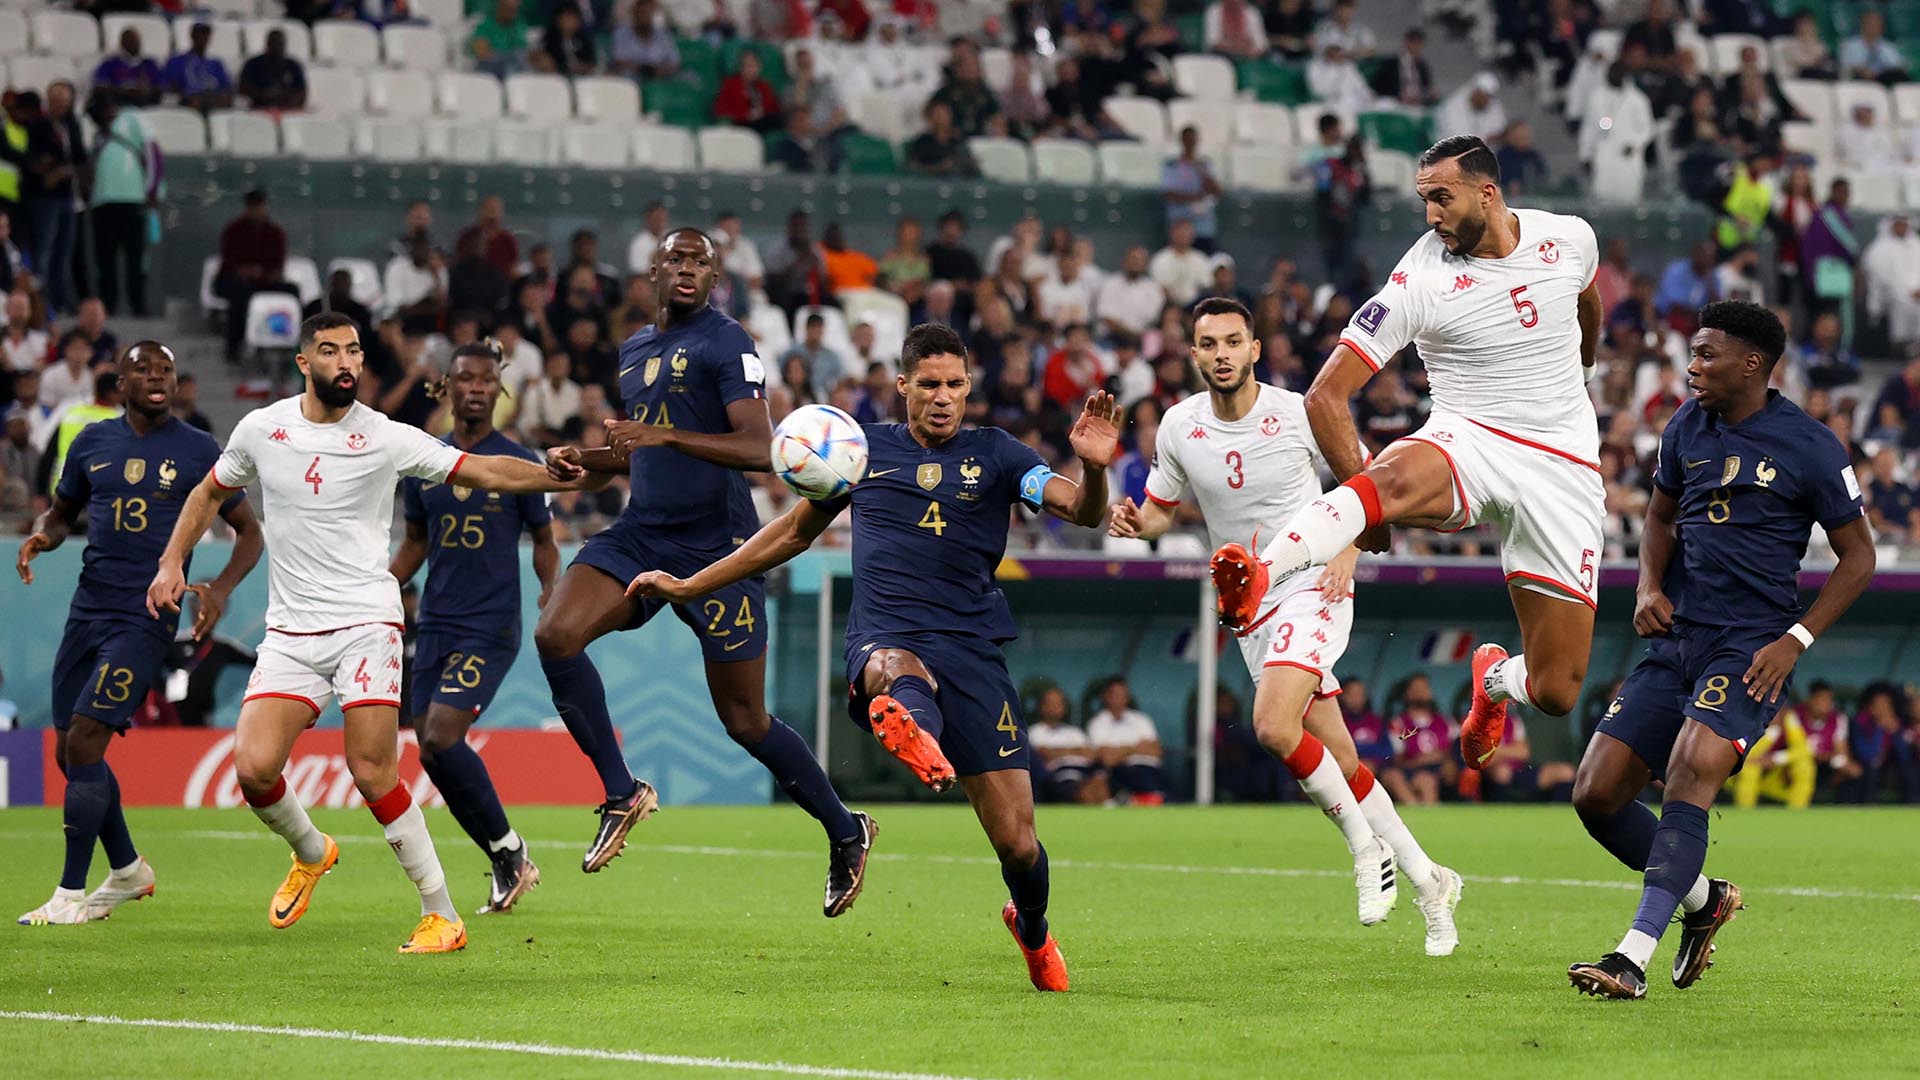 Tampoco se puede sacar de la ecuación a la Argelia de Mahrez, ex jugador del Manchester City. En 2019 salieron campeones tras un disputado encuentro ante Senegal. Sin olvidar otras selecciones más humildes como Túnez, que venció a Francia en el pasado Mundial.